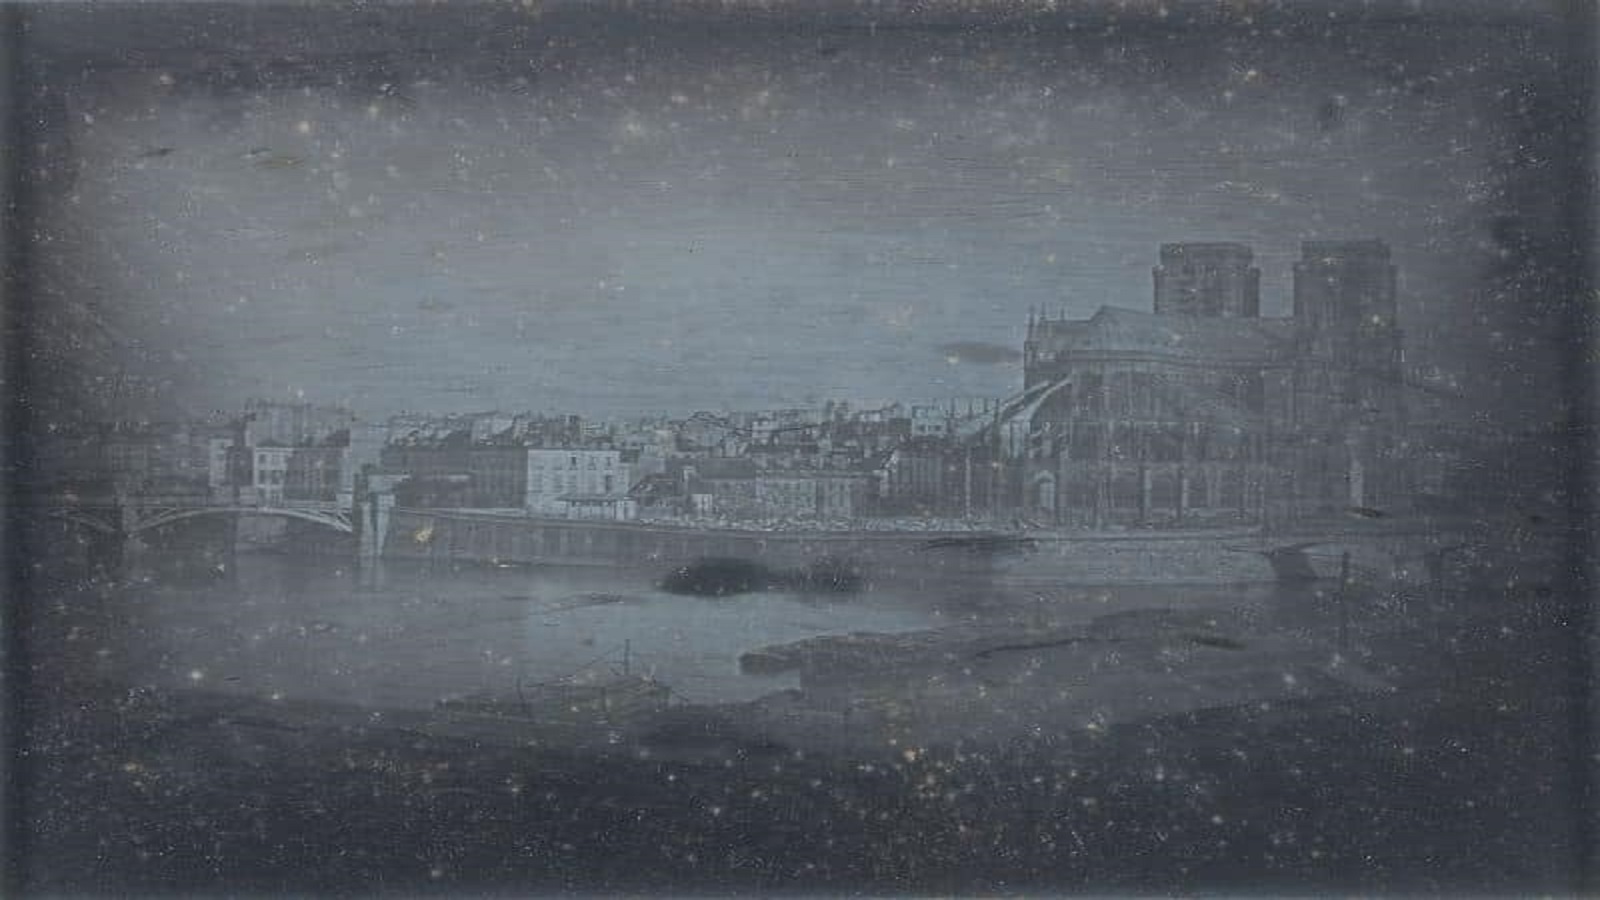 من اوائل الصور الفوتوغرافية عن الكاتدرائية، وهي للويس داغير في العام 1838، 